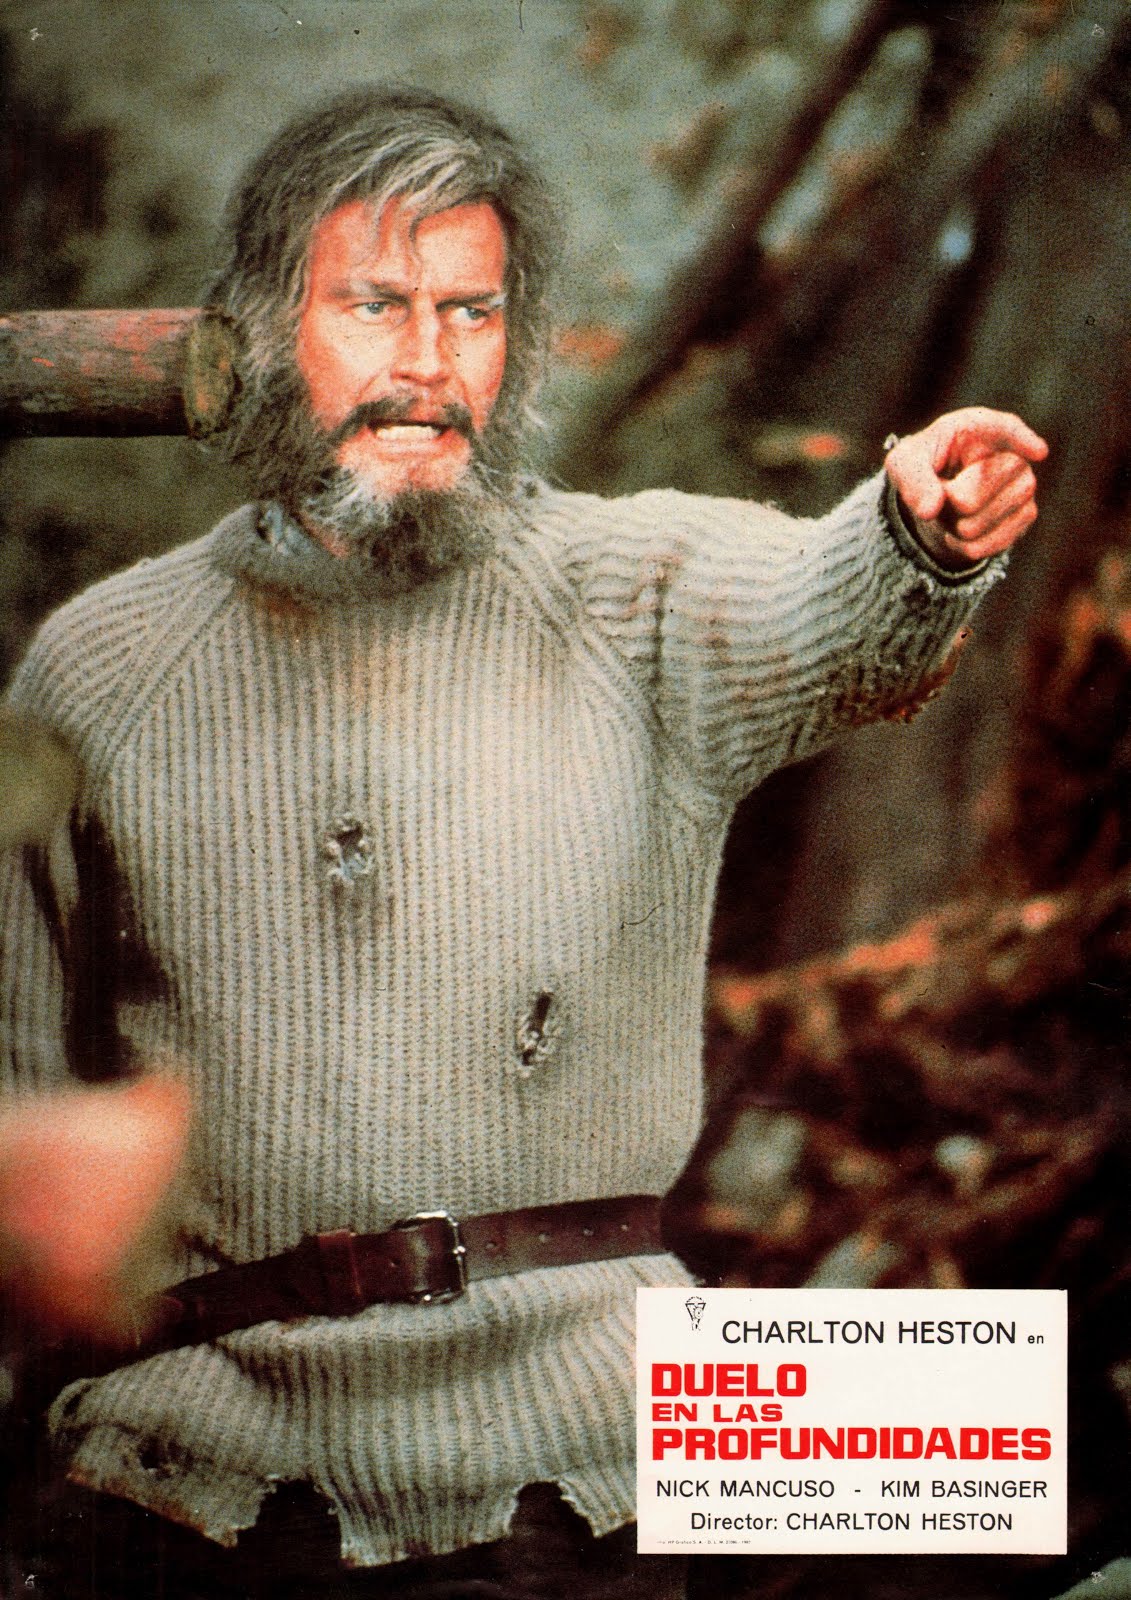 La fièvre de l'or (1981) Charlton Heston / Fraser C. Heston - Mother lode (28.09.1981 / 11.1981)